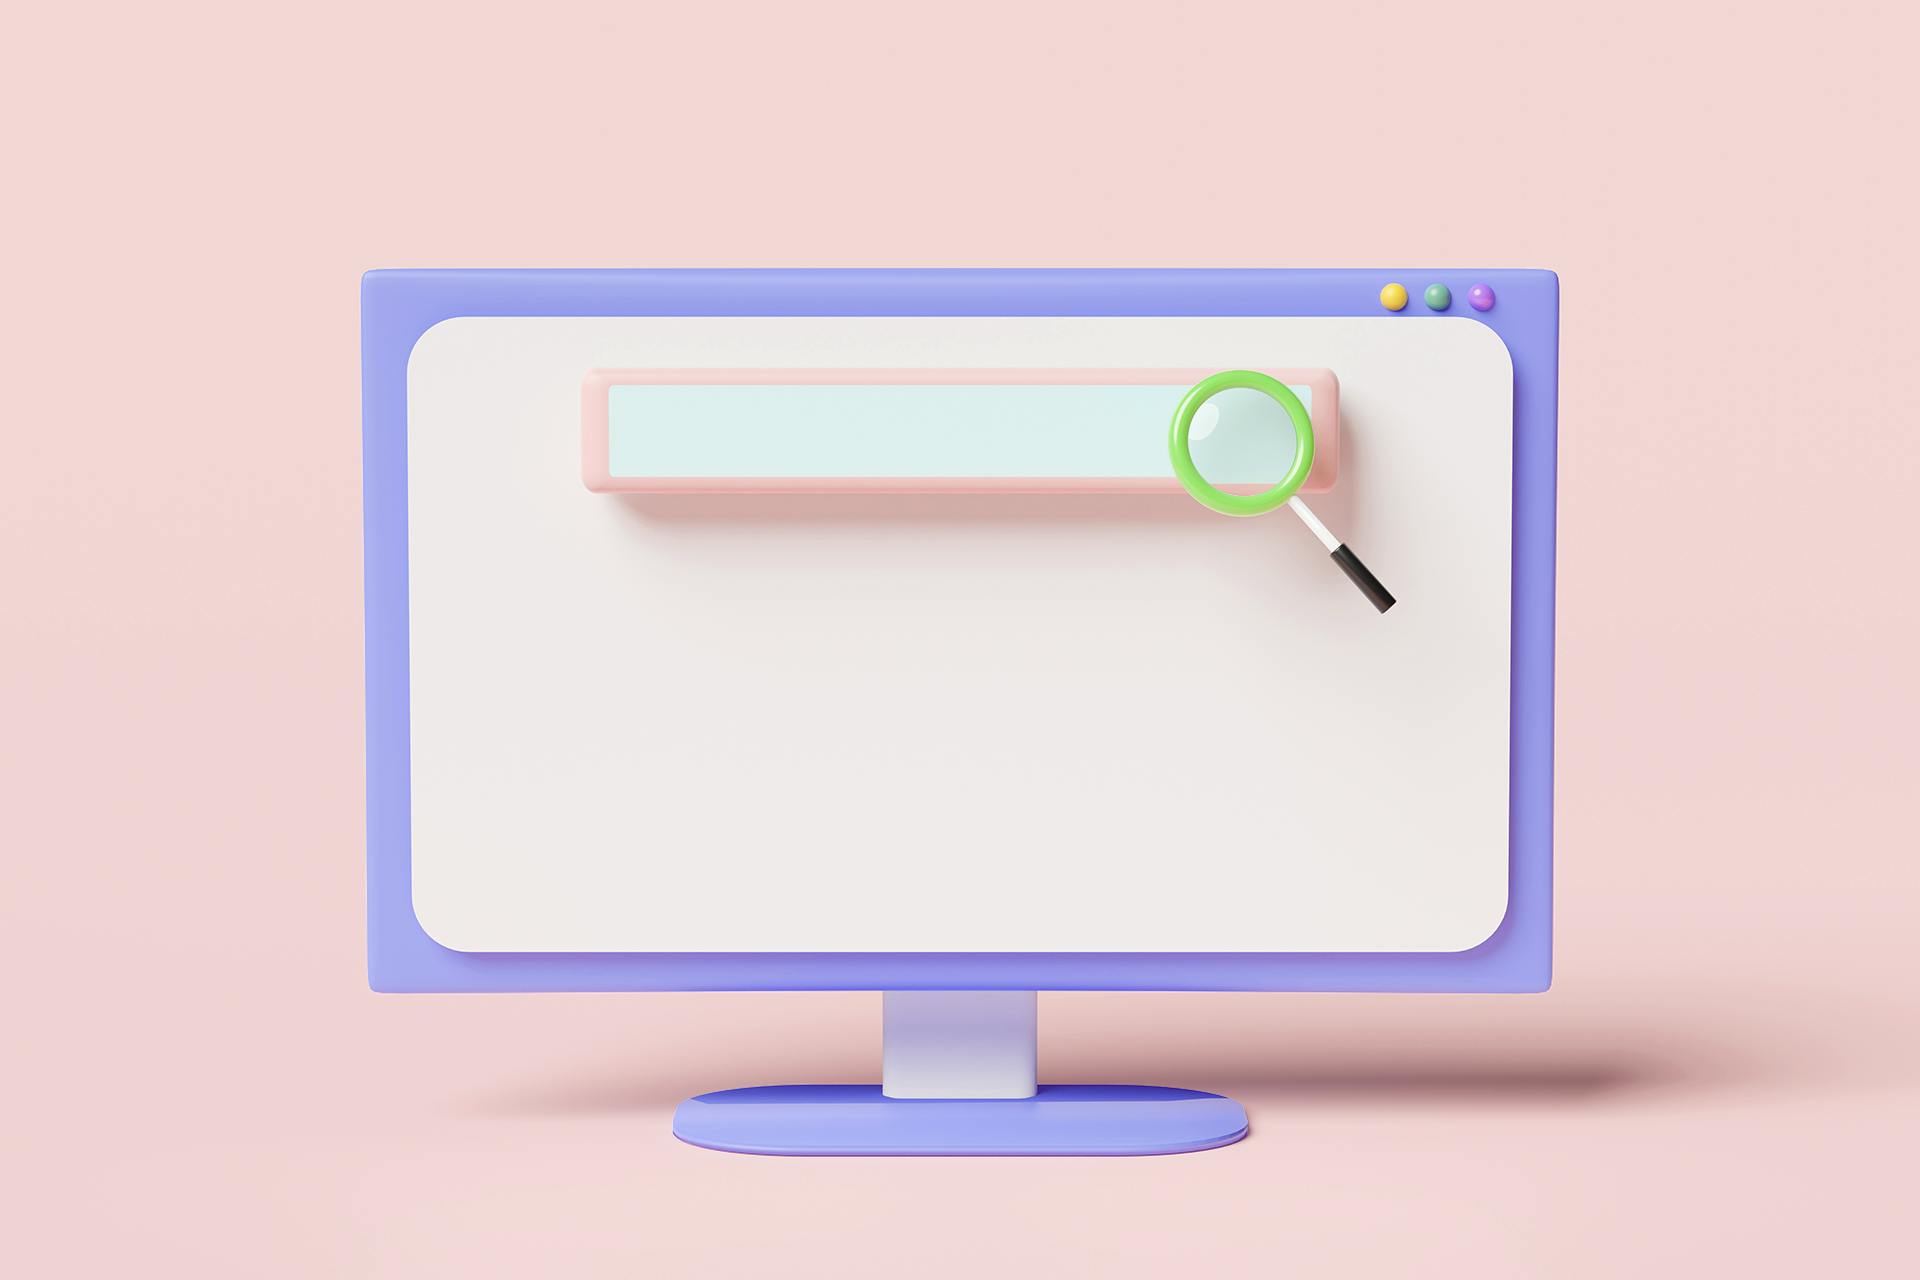 Vaaleanpunaisella taustalla oleva tietokone, jonka näytöllä on hakukoneen hakukenttä